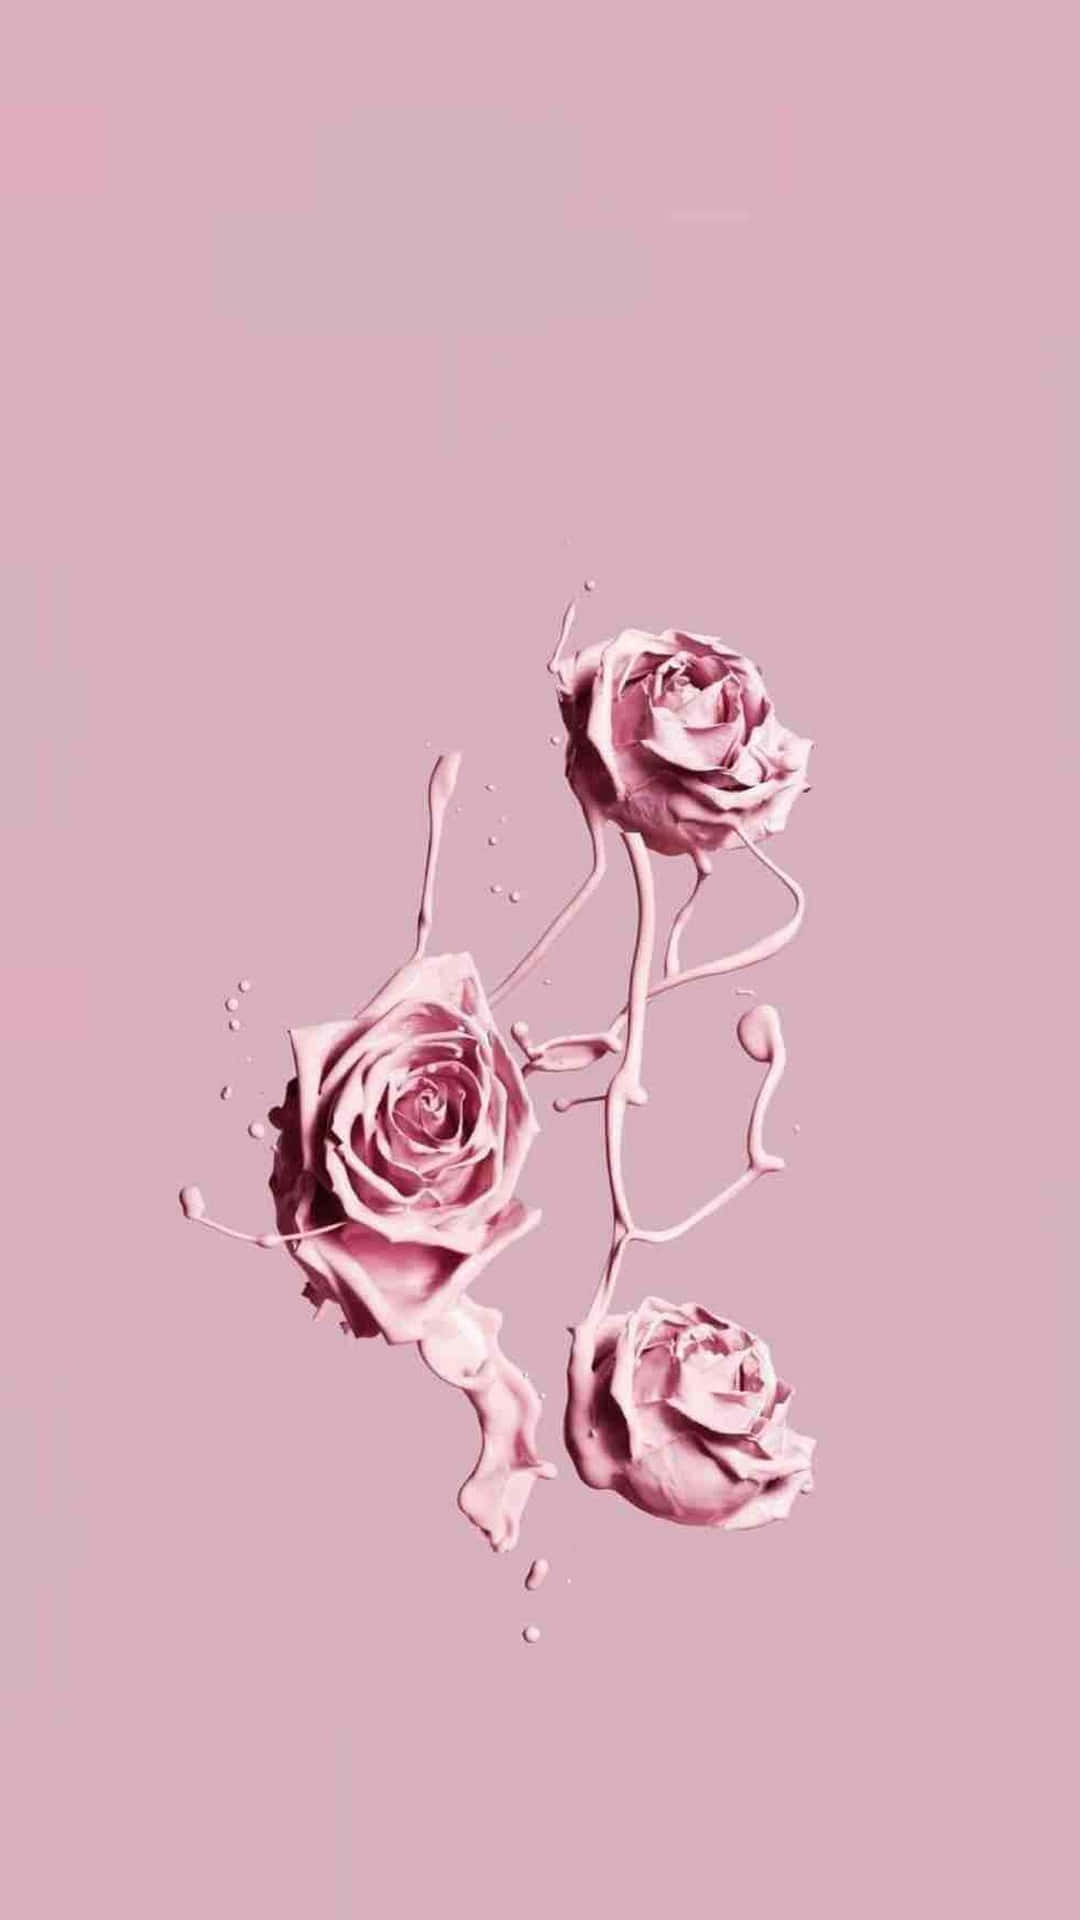 Rose Gold Roses Aesthetic Wallpaper.jpg Wallpaper